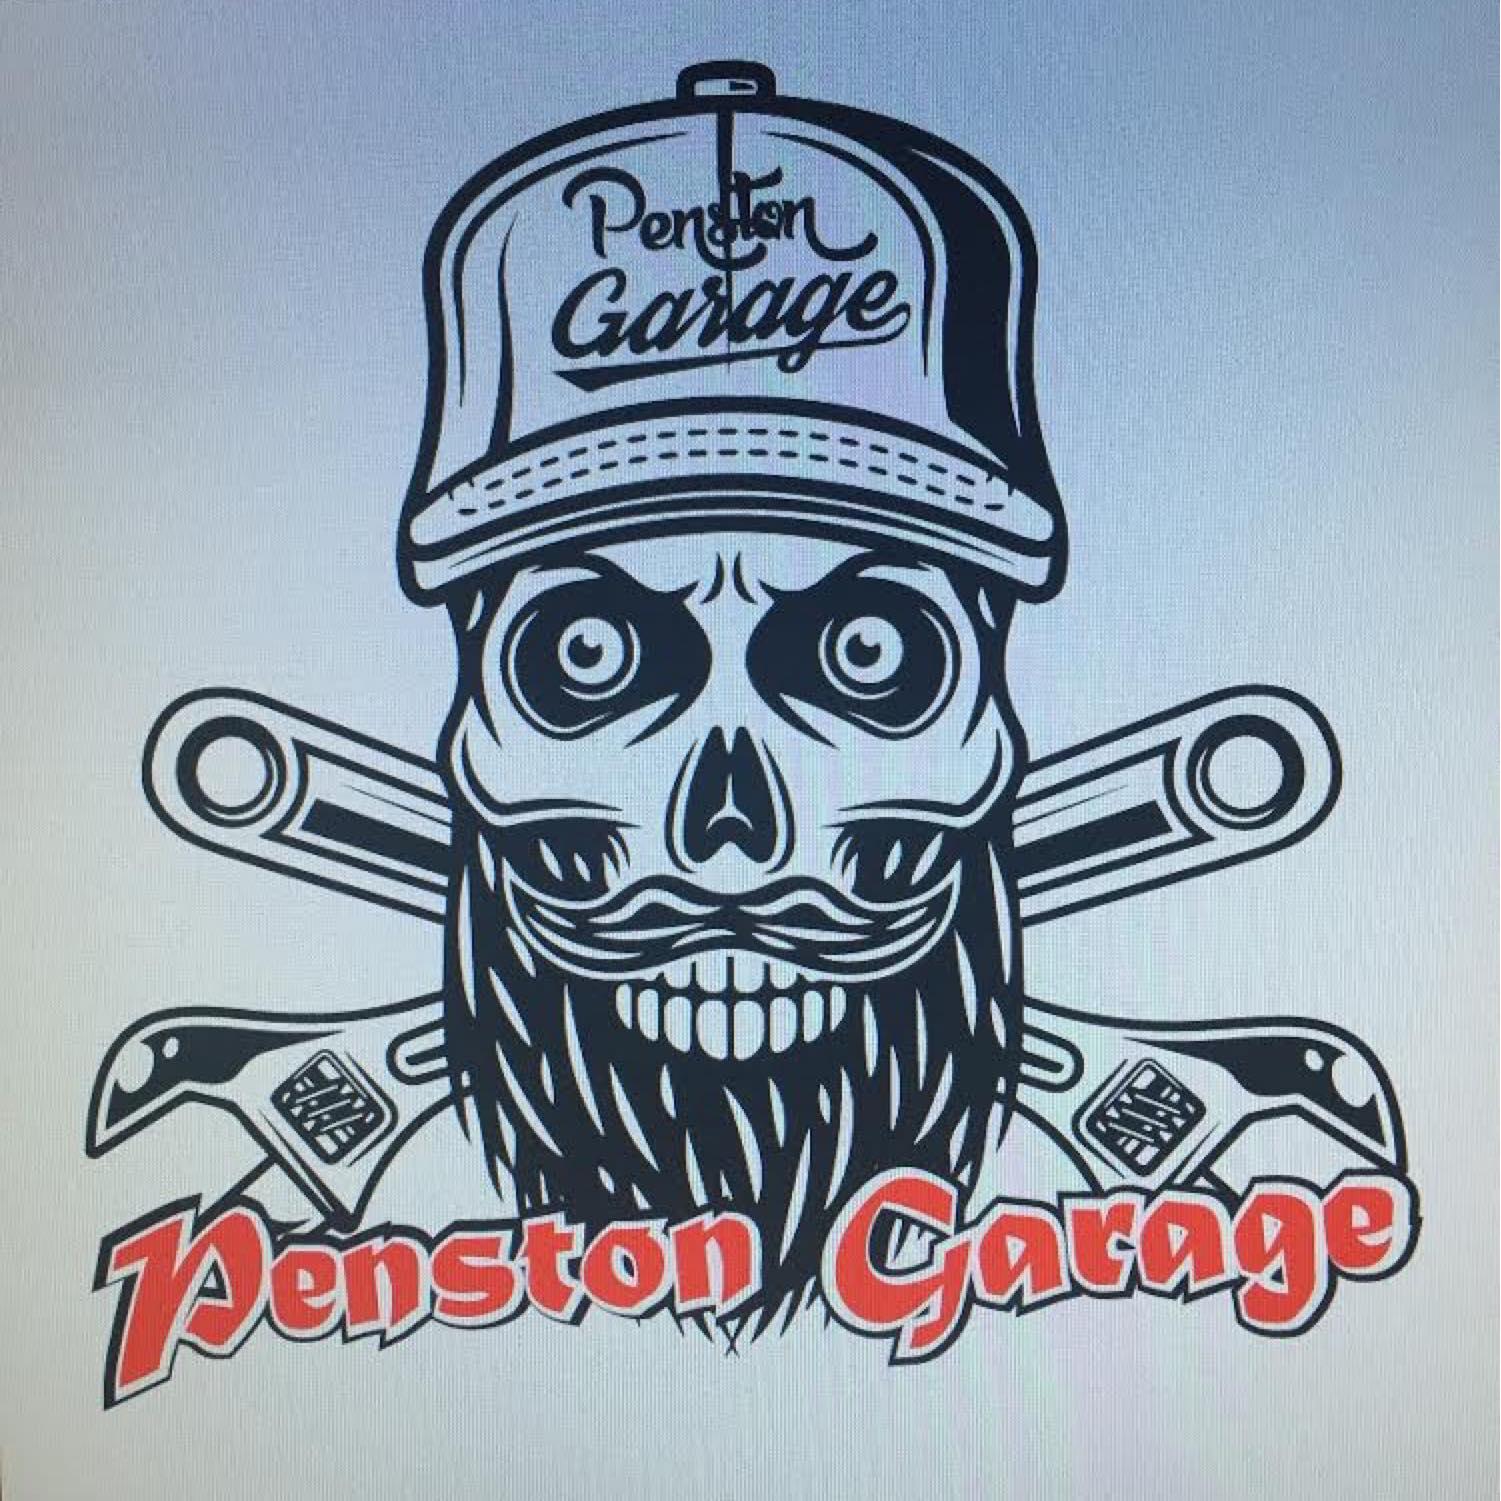 Penston Garage Logo